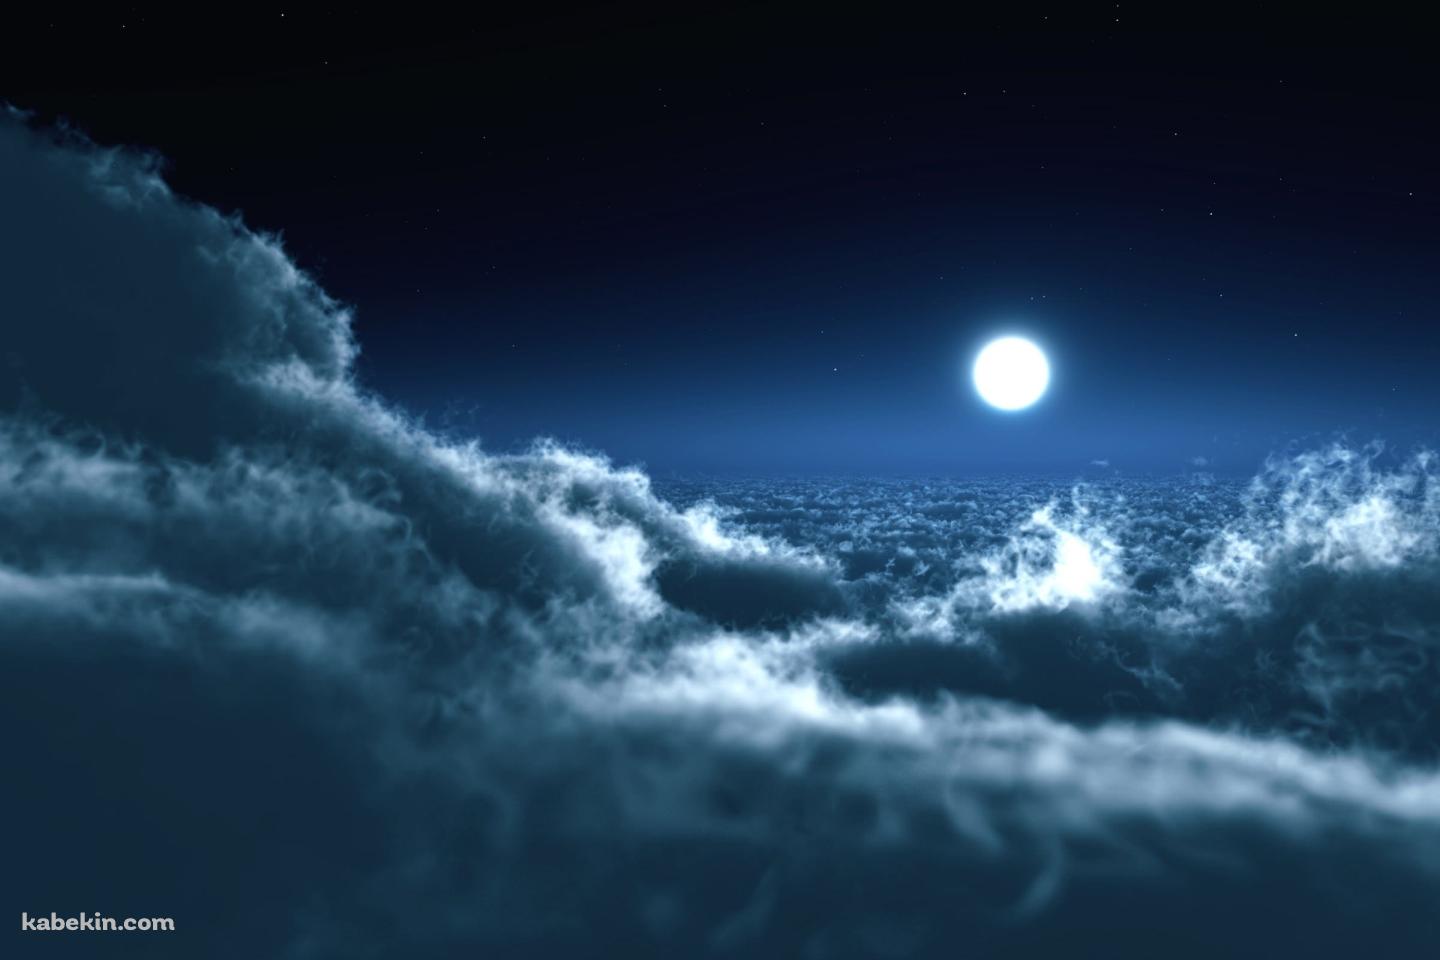 雲の上の月の壁紙(1440px x 960px) 高画質 PC・デスクトップ用